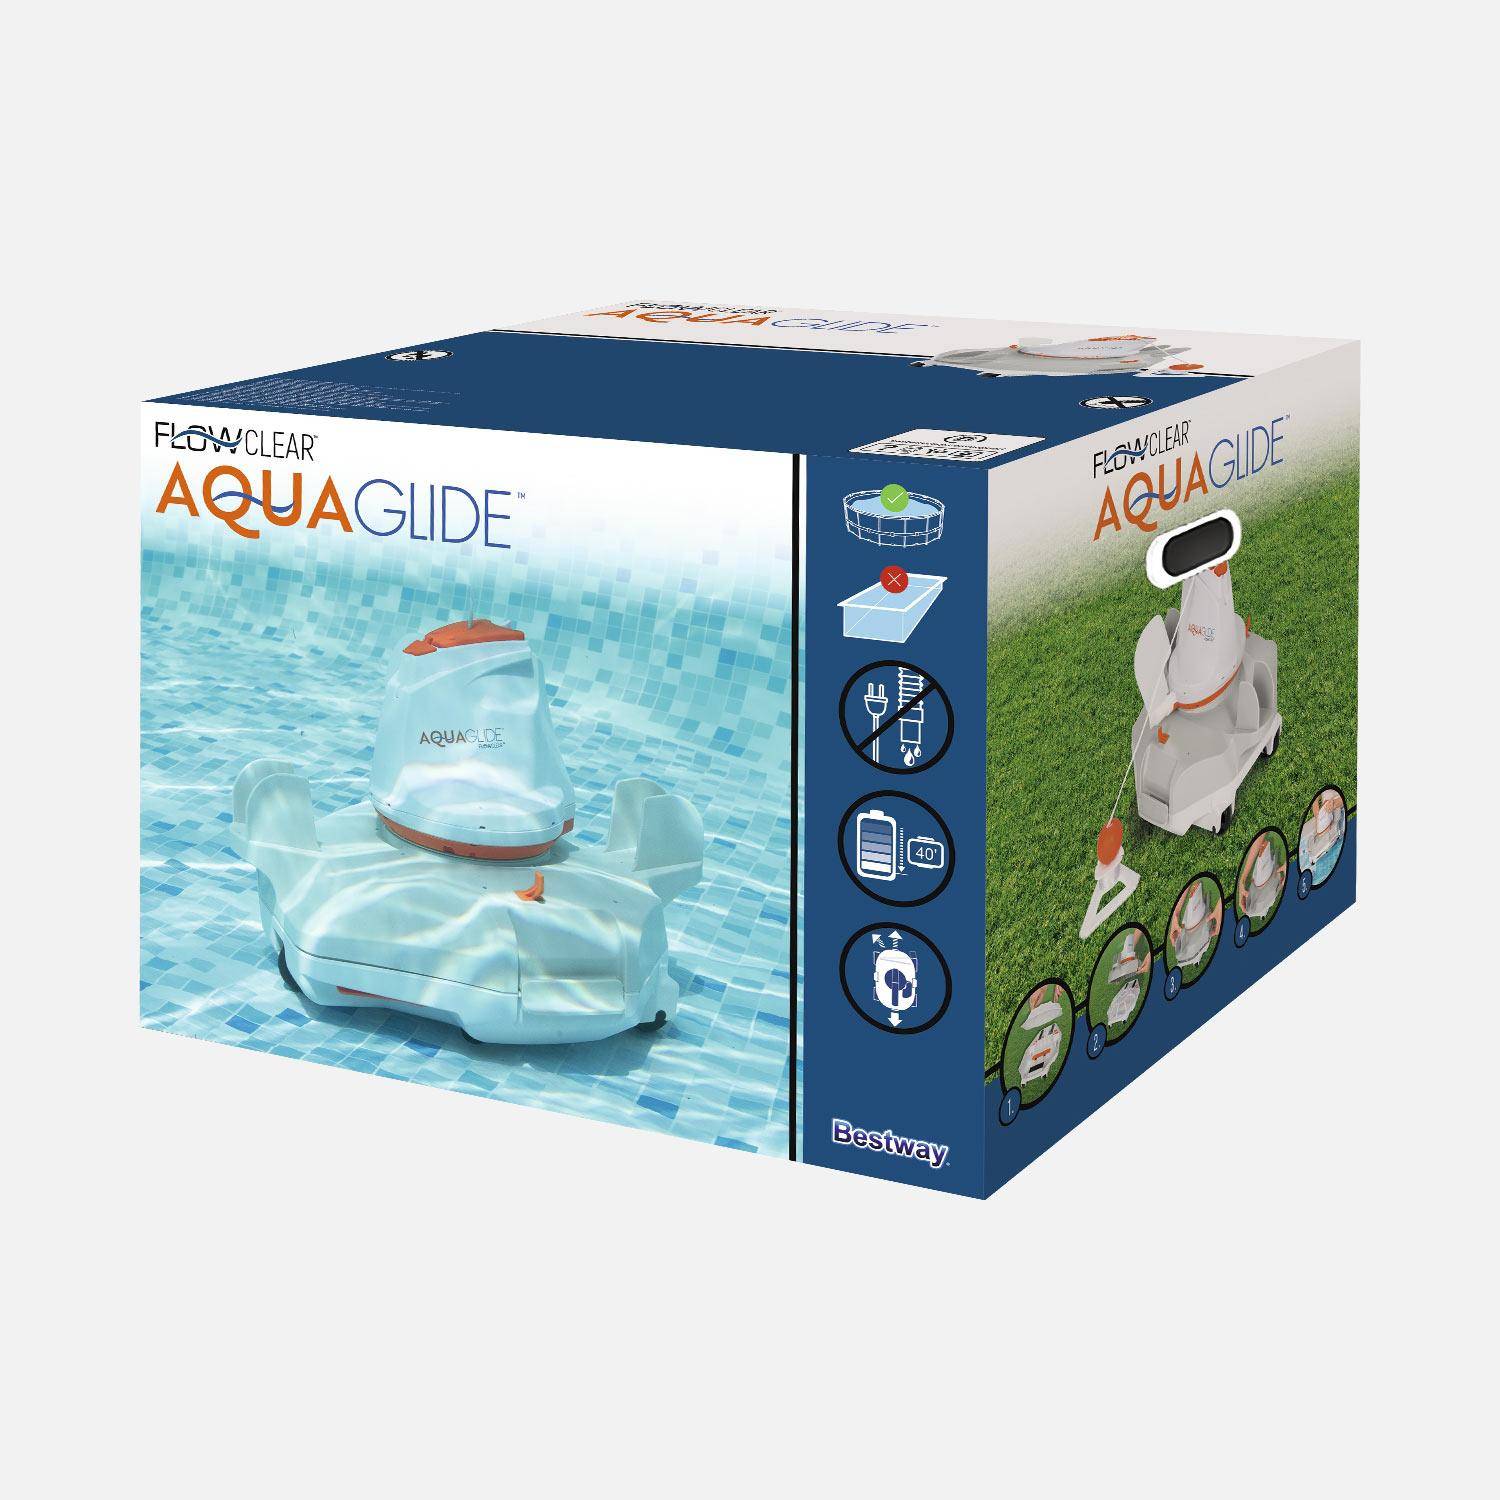 Robot aspirateur autonome Flowclear aquaglide pour piscines à fond plat jusqu'à 20m² Photo6